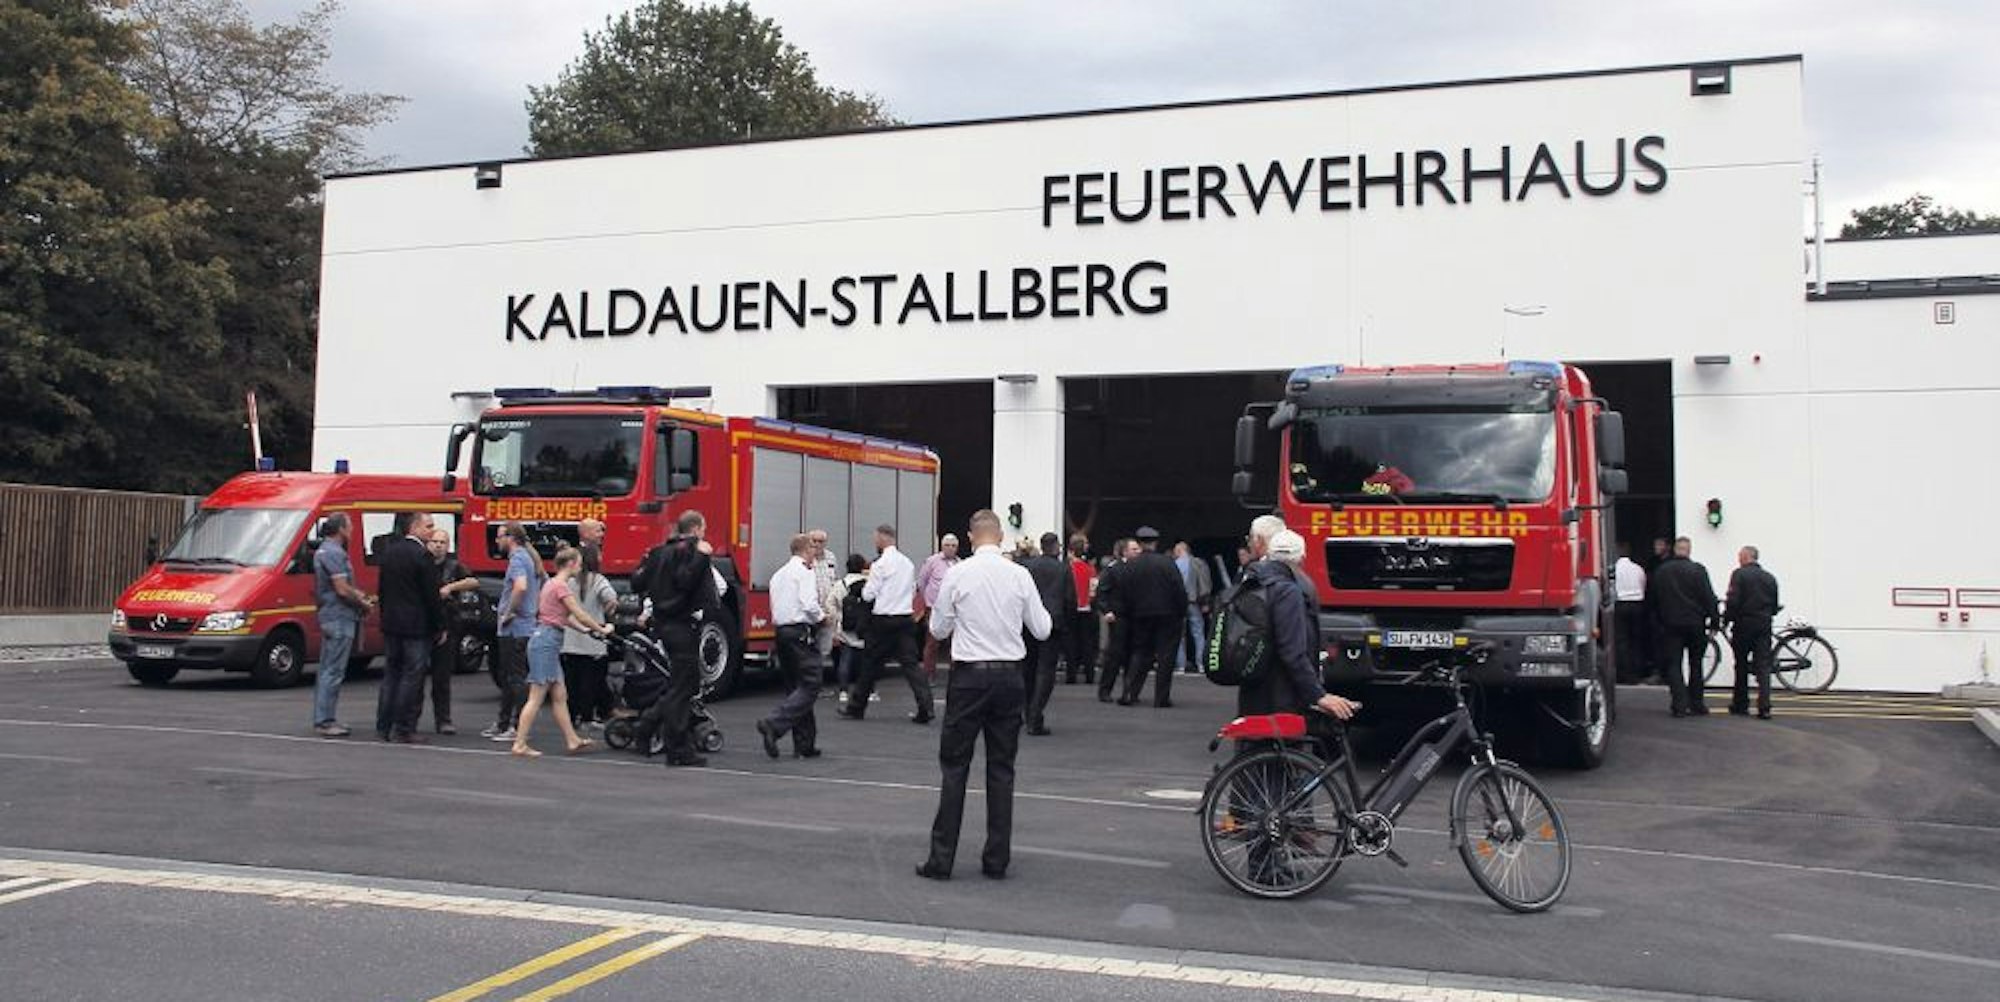 Auf dem alten Kirmesgelände an der Grenze zwischen Kaldauen und Stallberg ist ein modernes Feuerwehrhaus entstanden.